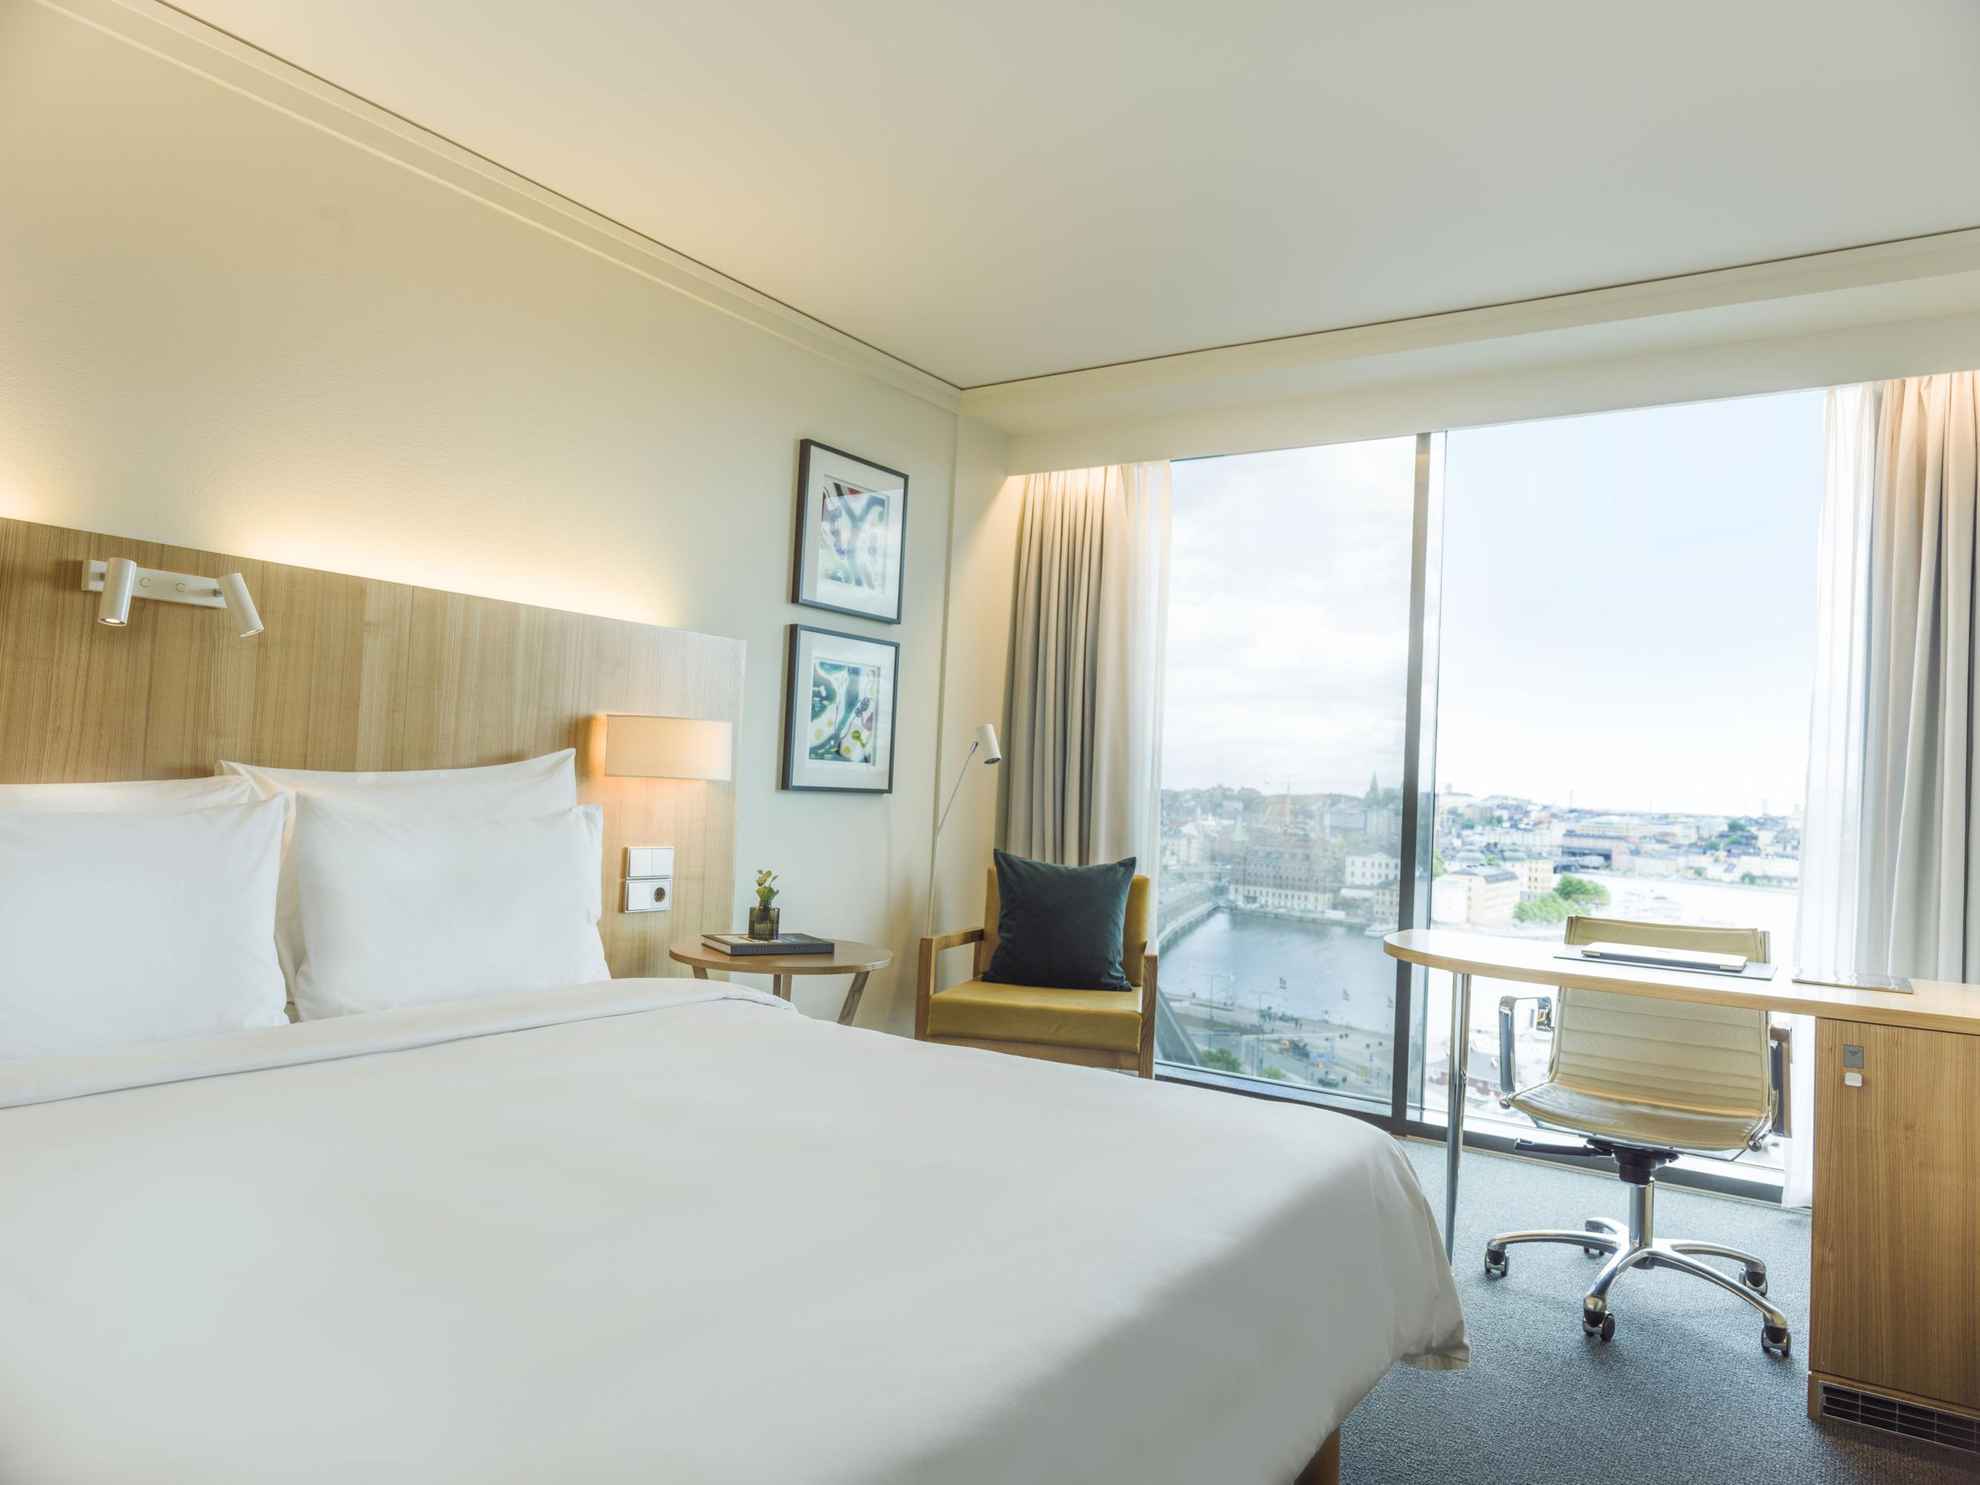 Une chambre d'hôtel avec un lit double et des draps blancs. Il y a de grandes fenêtres donnant sur l'eau.